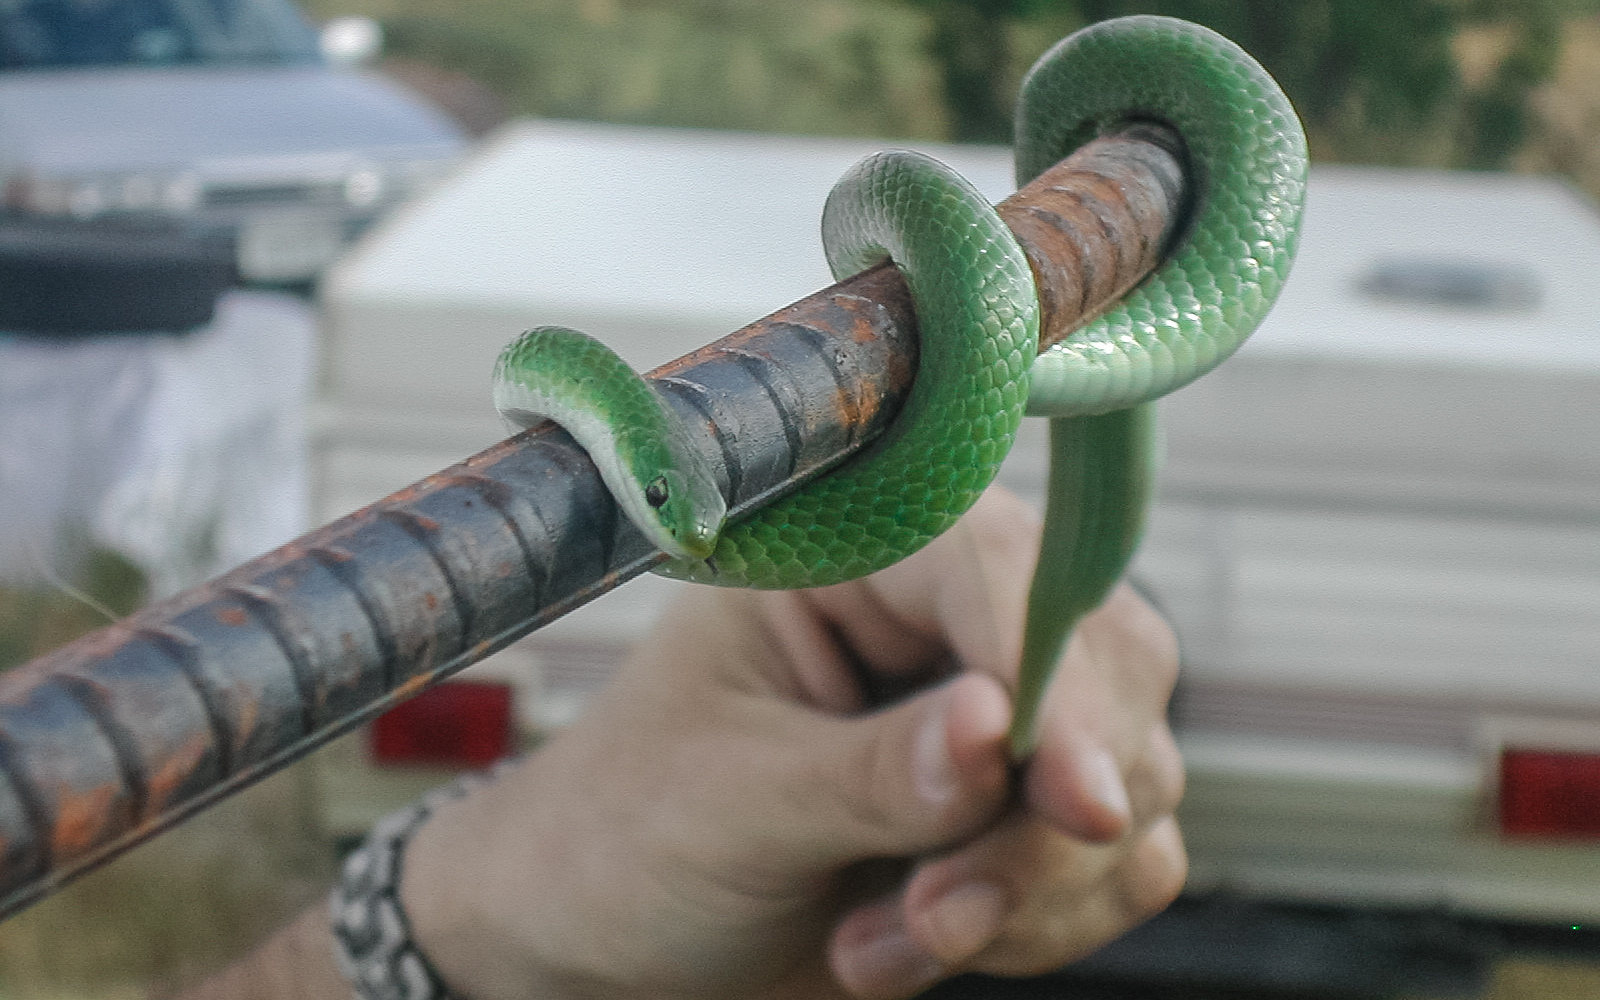 Found a beautiful green garden snake